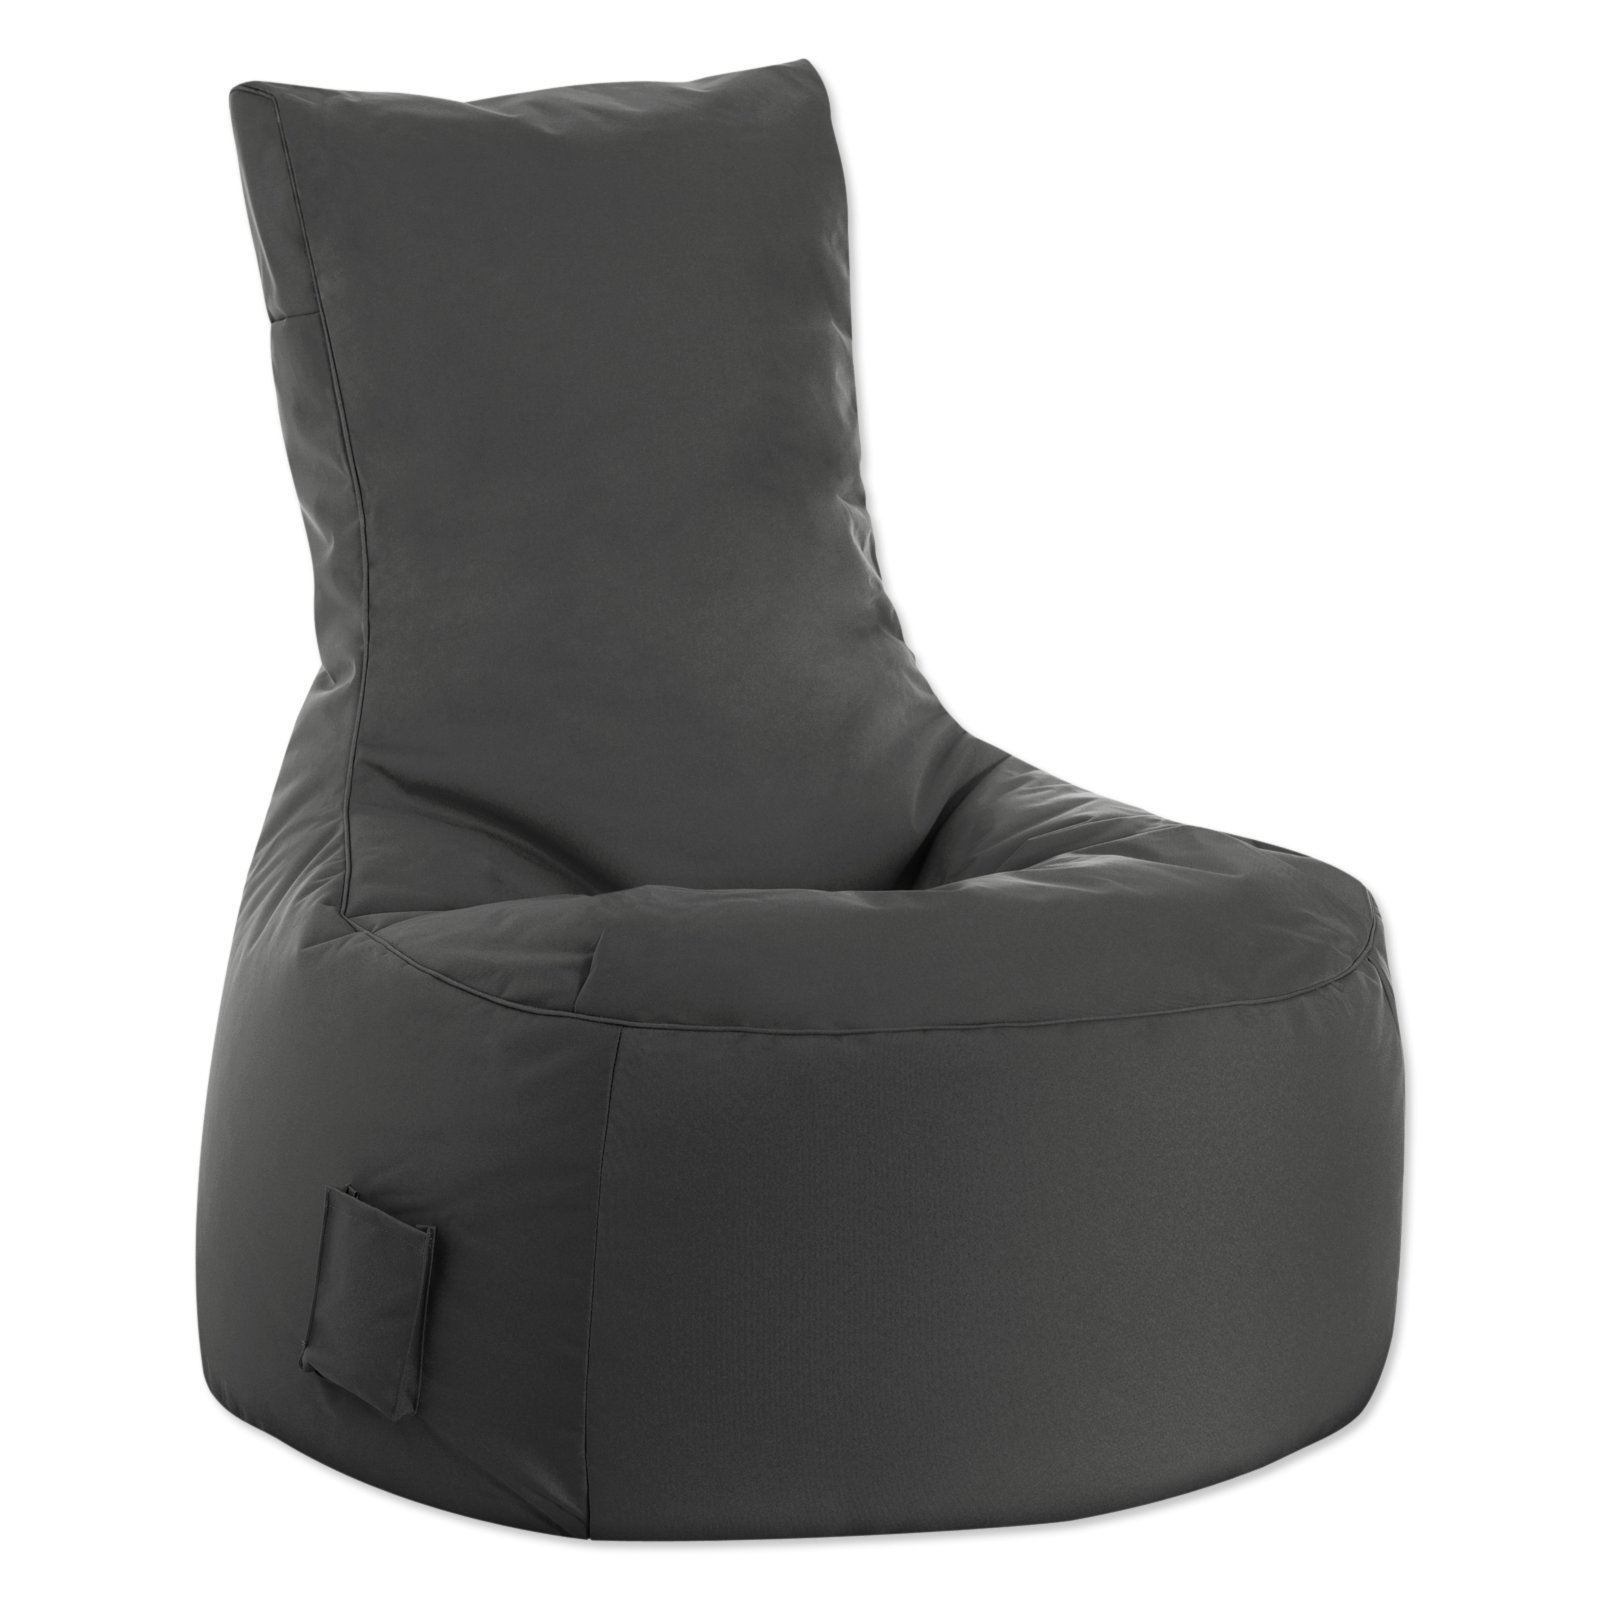 SITTING POINT - Sitzsack BRAVA SWING - anthrazit | Online bei ROLLER kaufen